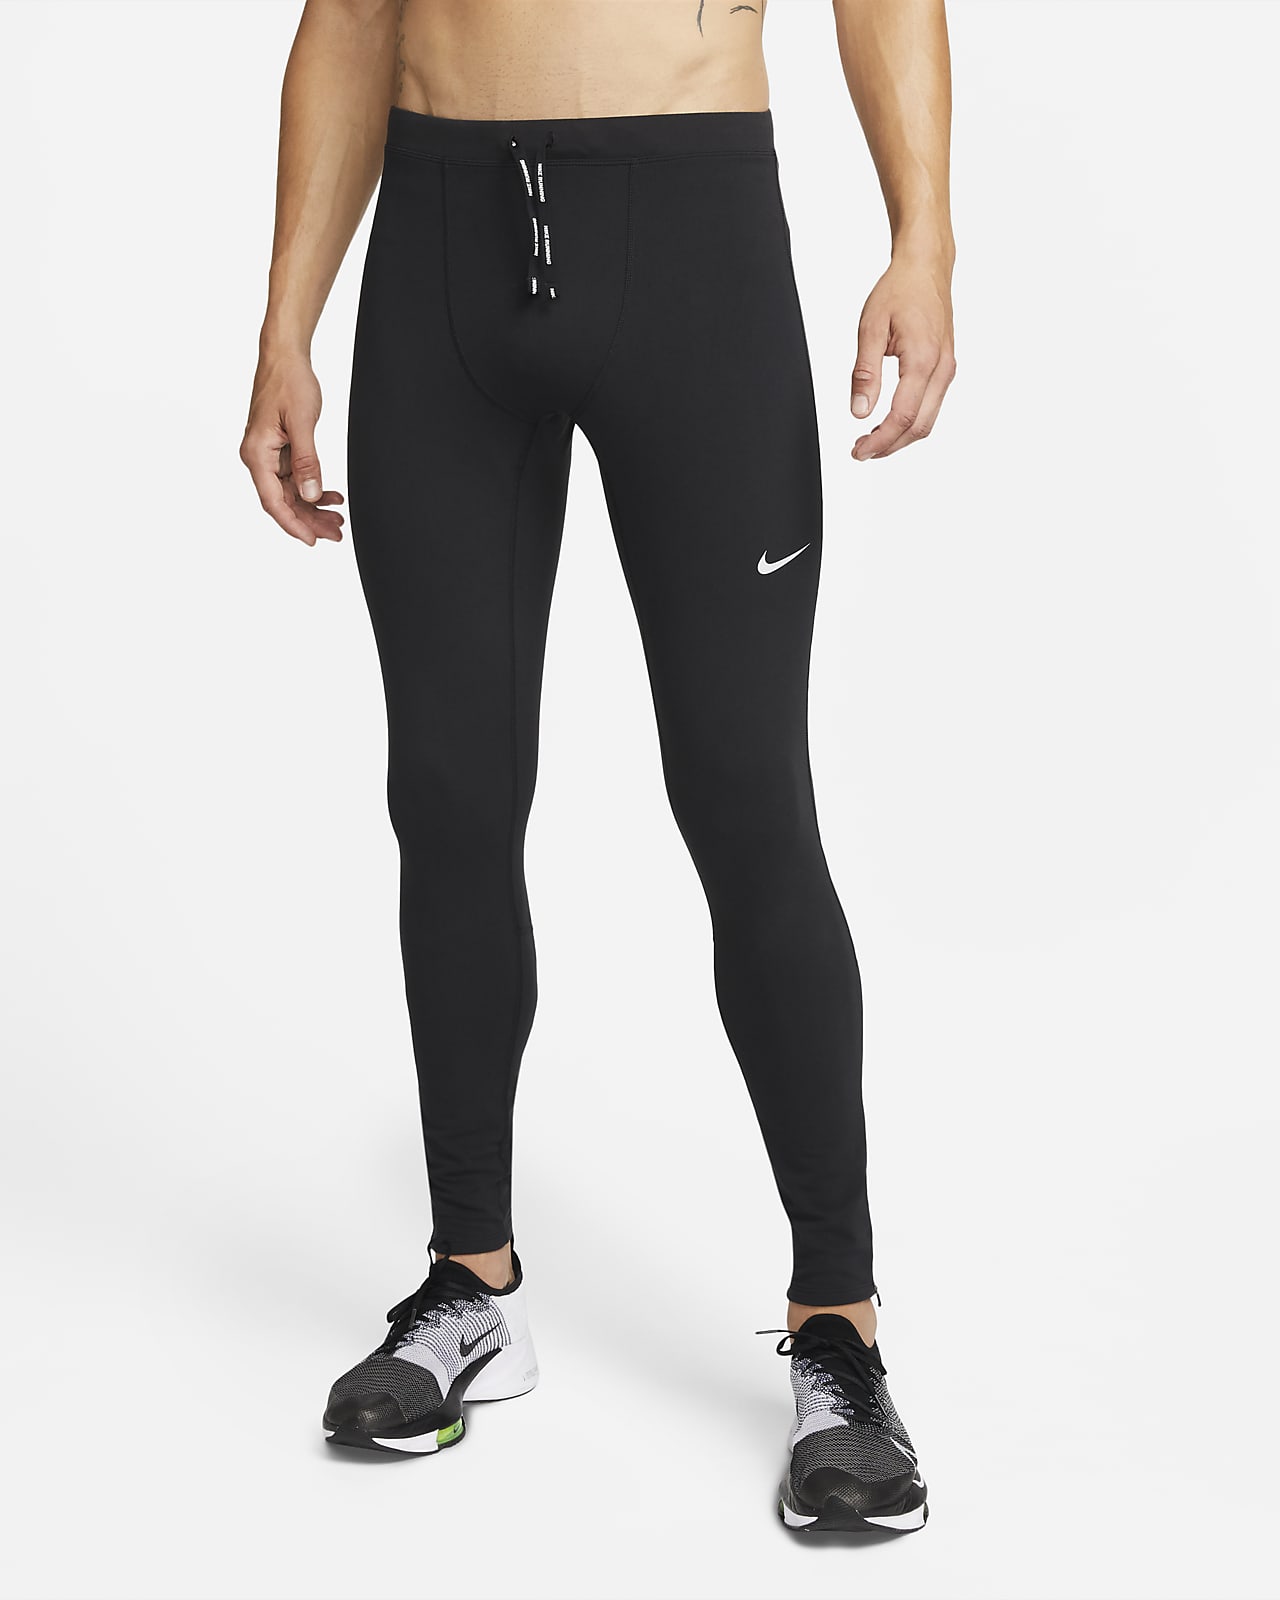 Ανδρικό κολάν για τρέξιμο Nike Repel Challenger